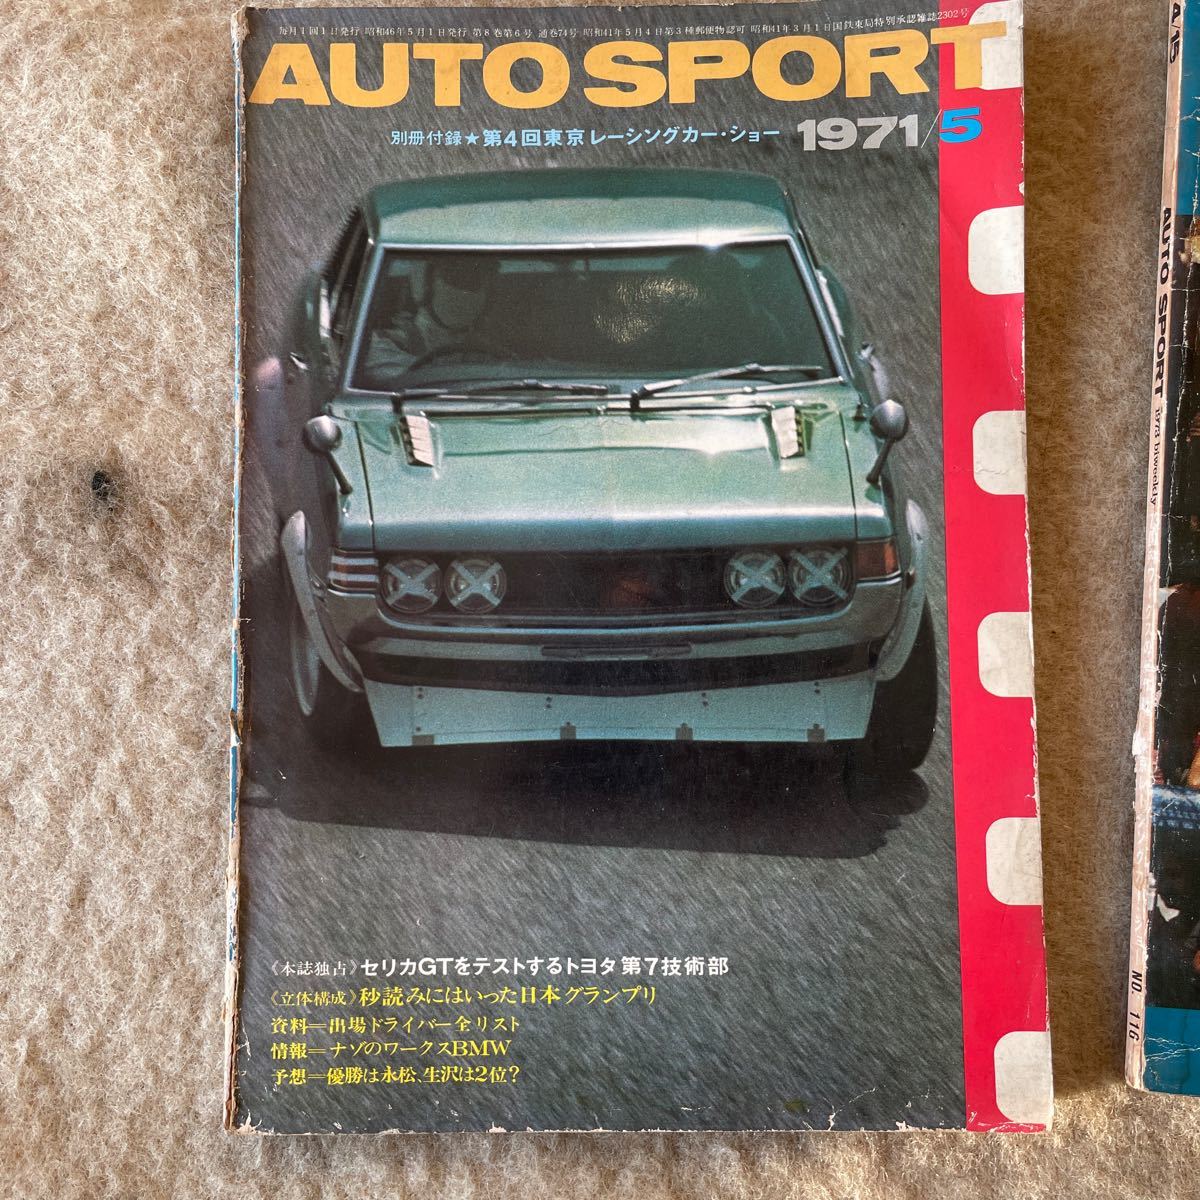 オートスポーツ auto sport 1971-1979 6冊セット 60size発送雑誌 ラリーアート モータースポーツ 古書の画像2